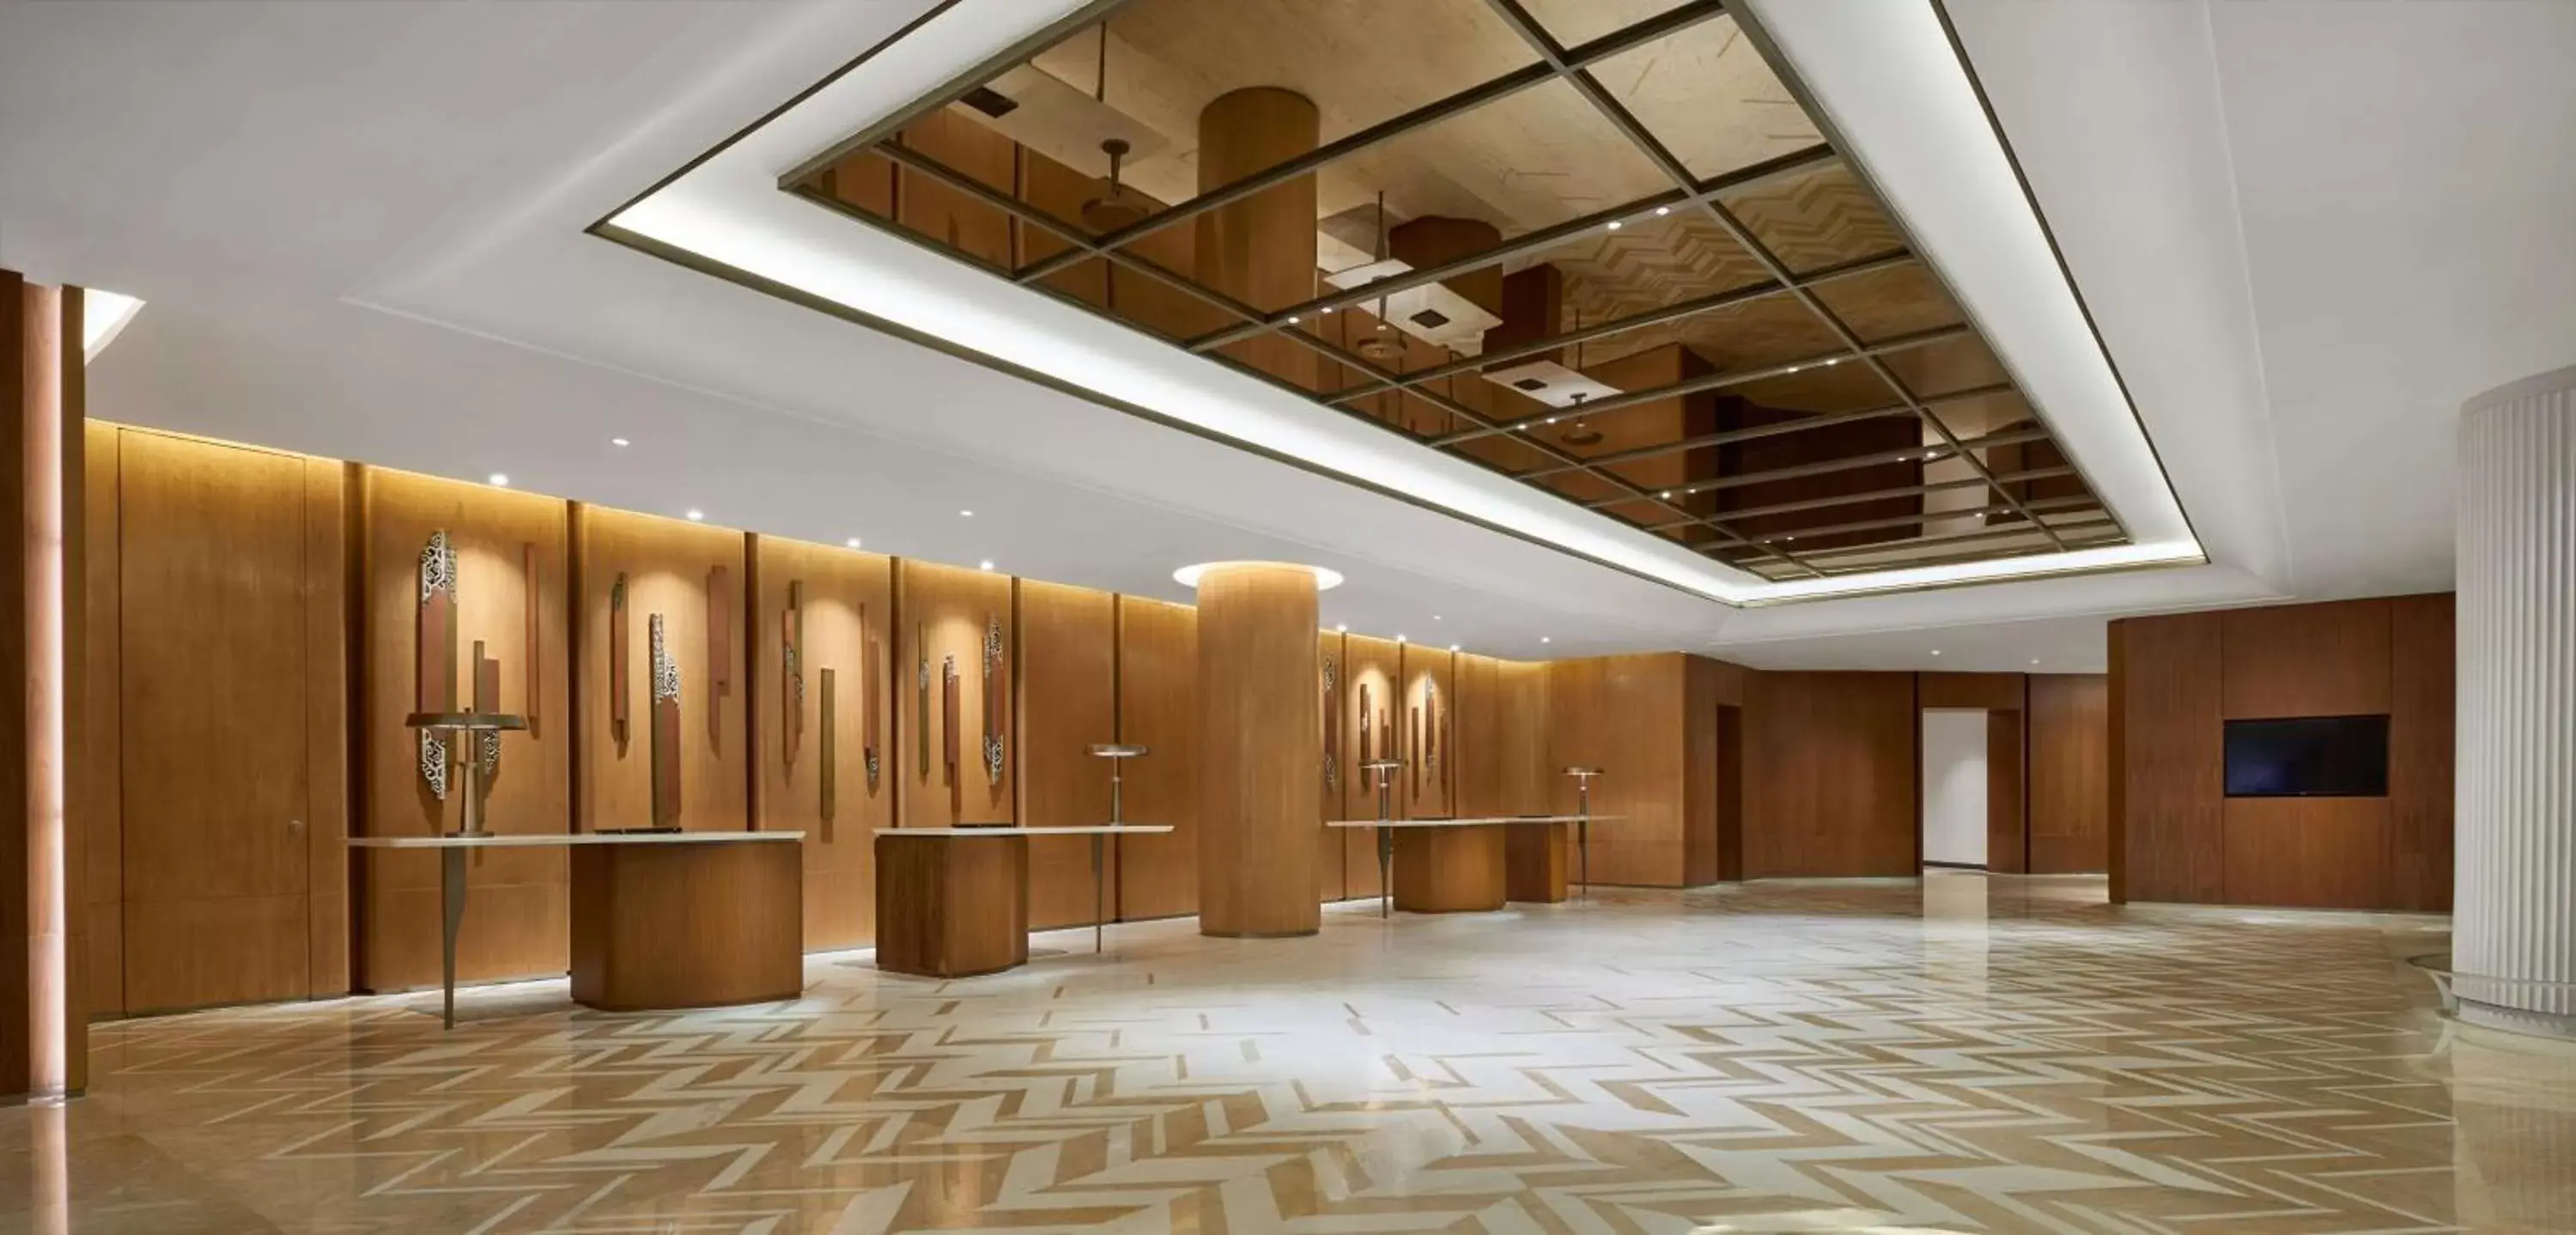 Lobby or reception in Grand Hyatt Jakarta